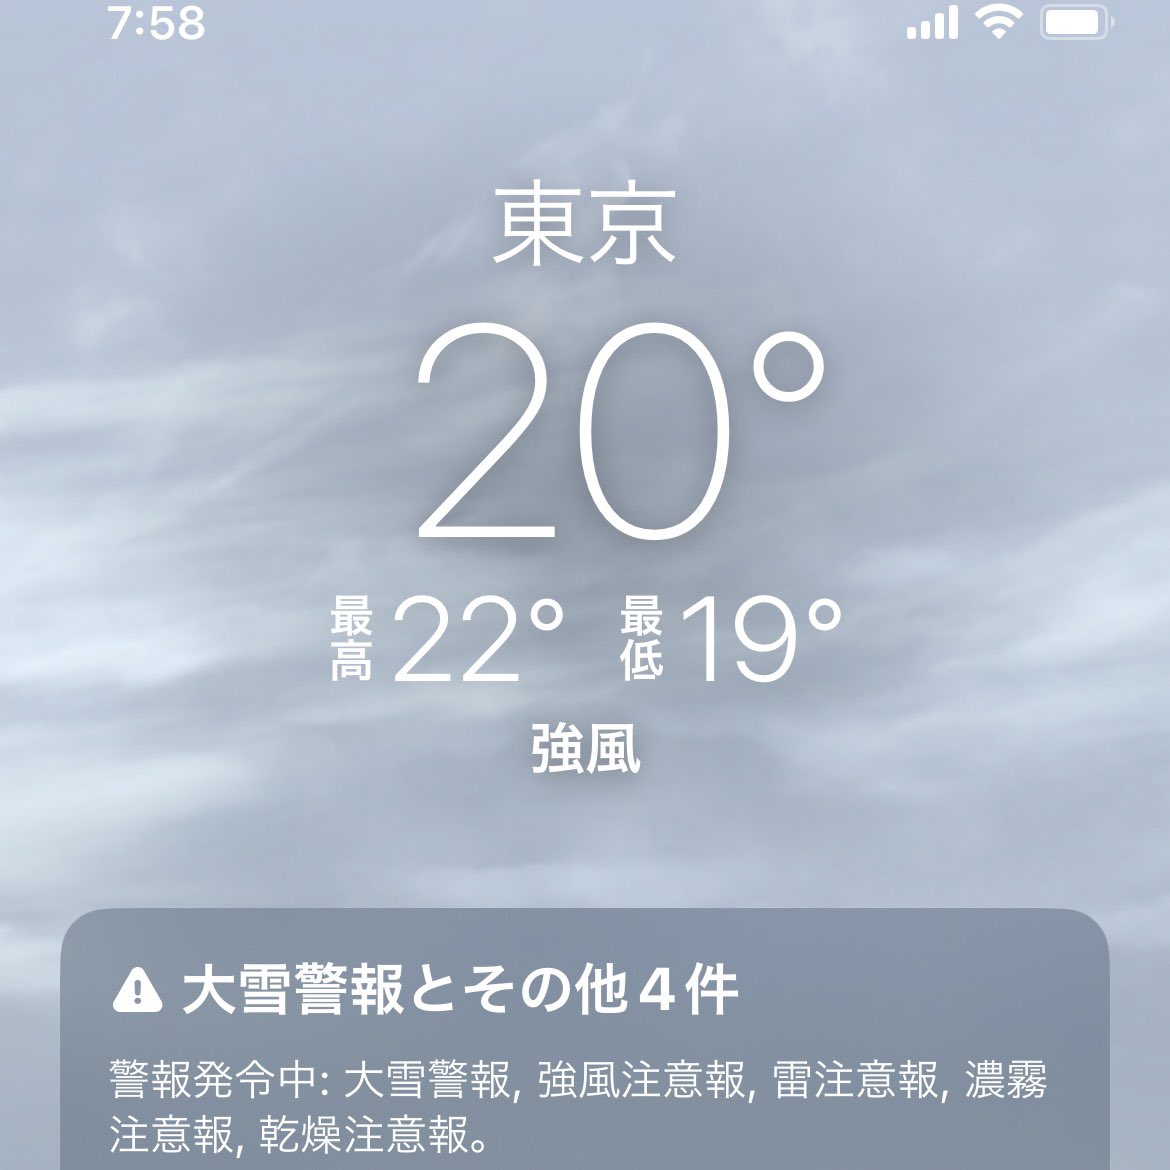 おはようございます 毎日寒い。暖房つけてないからか😅 日がさすとすぐ暖かくなり迷う 不具合なのか東京の天気予報が、大雪予報。でも東京も広いから本当かもしれないし(˙˙*)? 寒暖差にお気をつけて 今夜は、星野源ANNですね ビバラのお話聴けるかな？楽しみ😊 今日もいい日になりますように